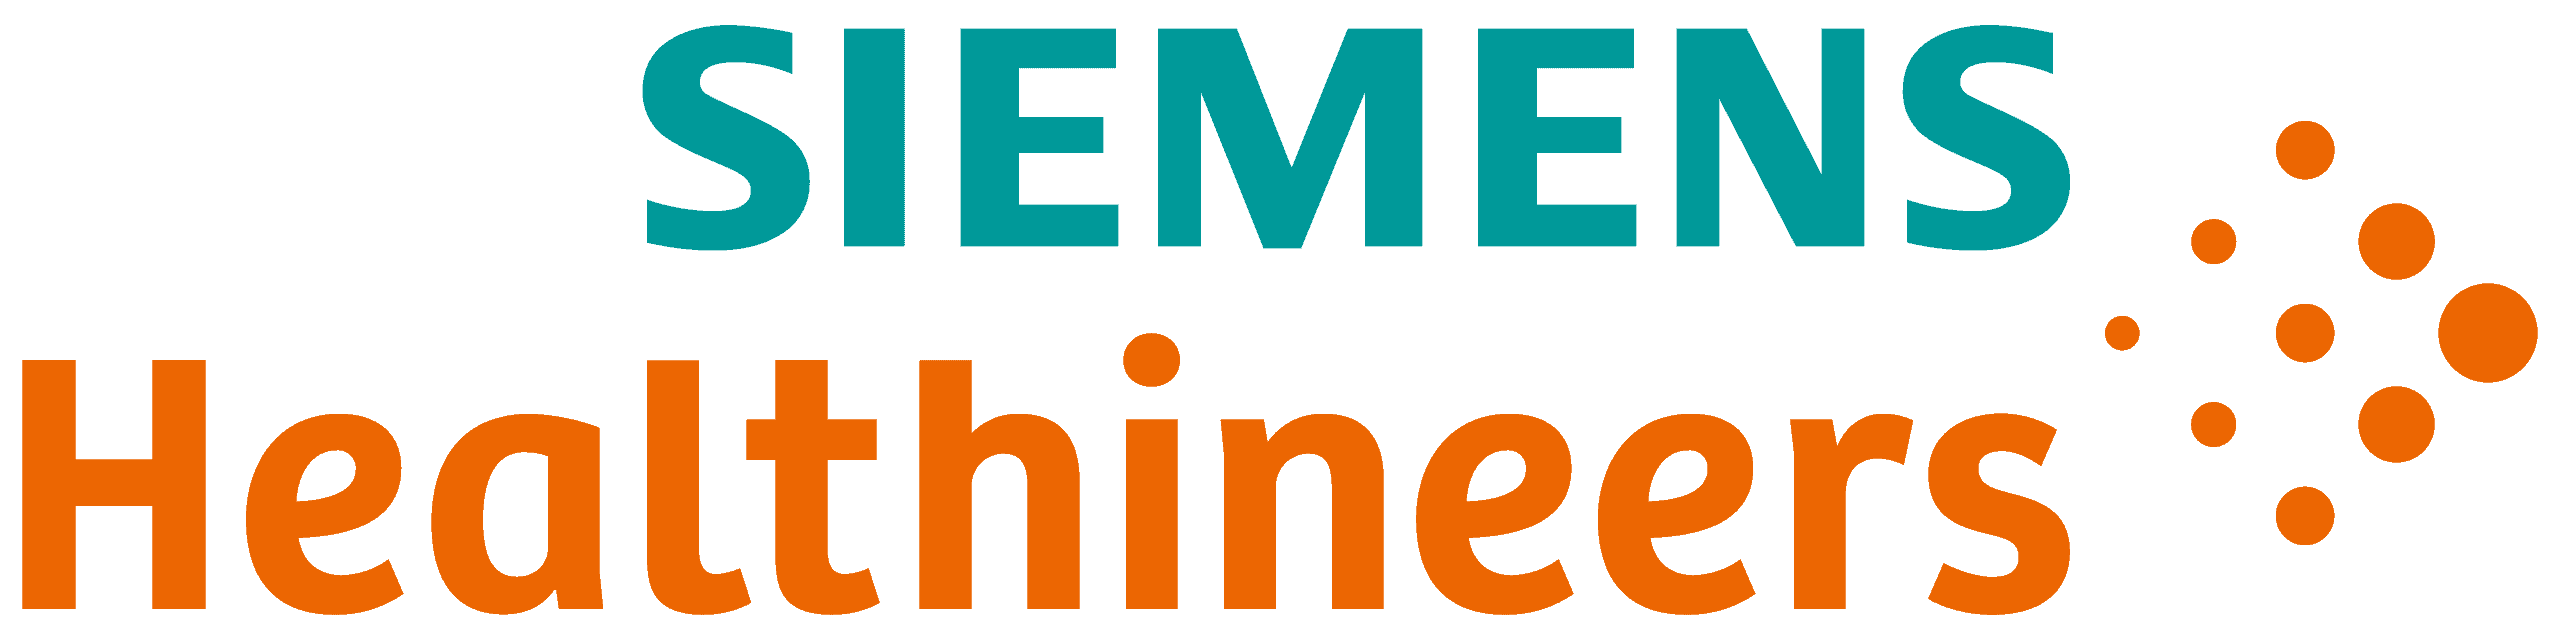 Siemens_Healthineers_logo.svg_